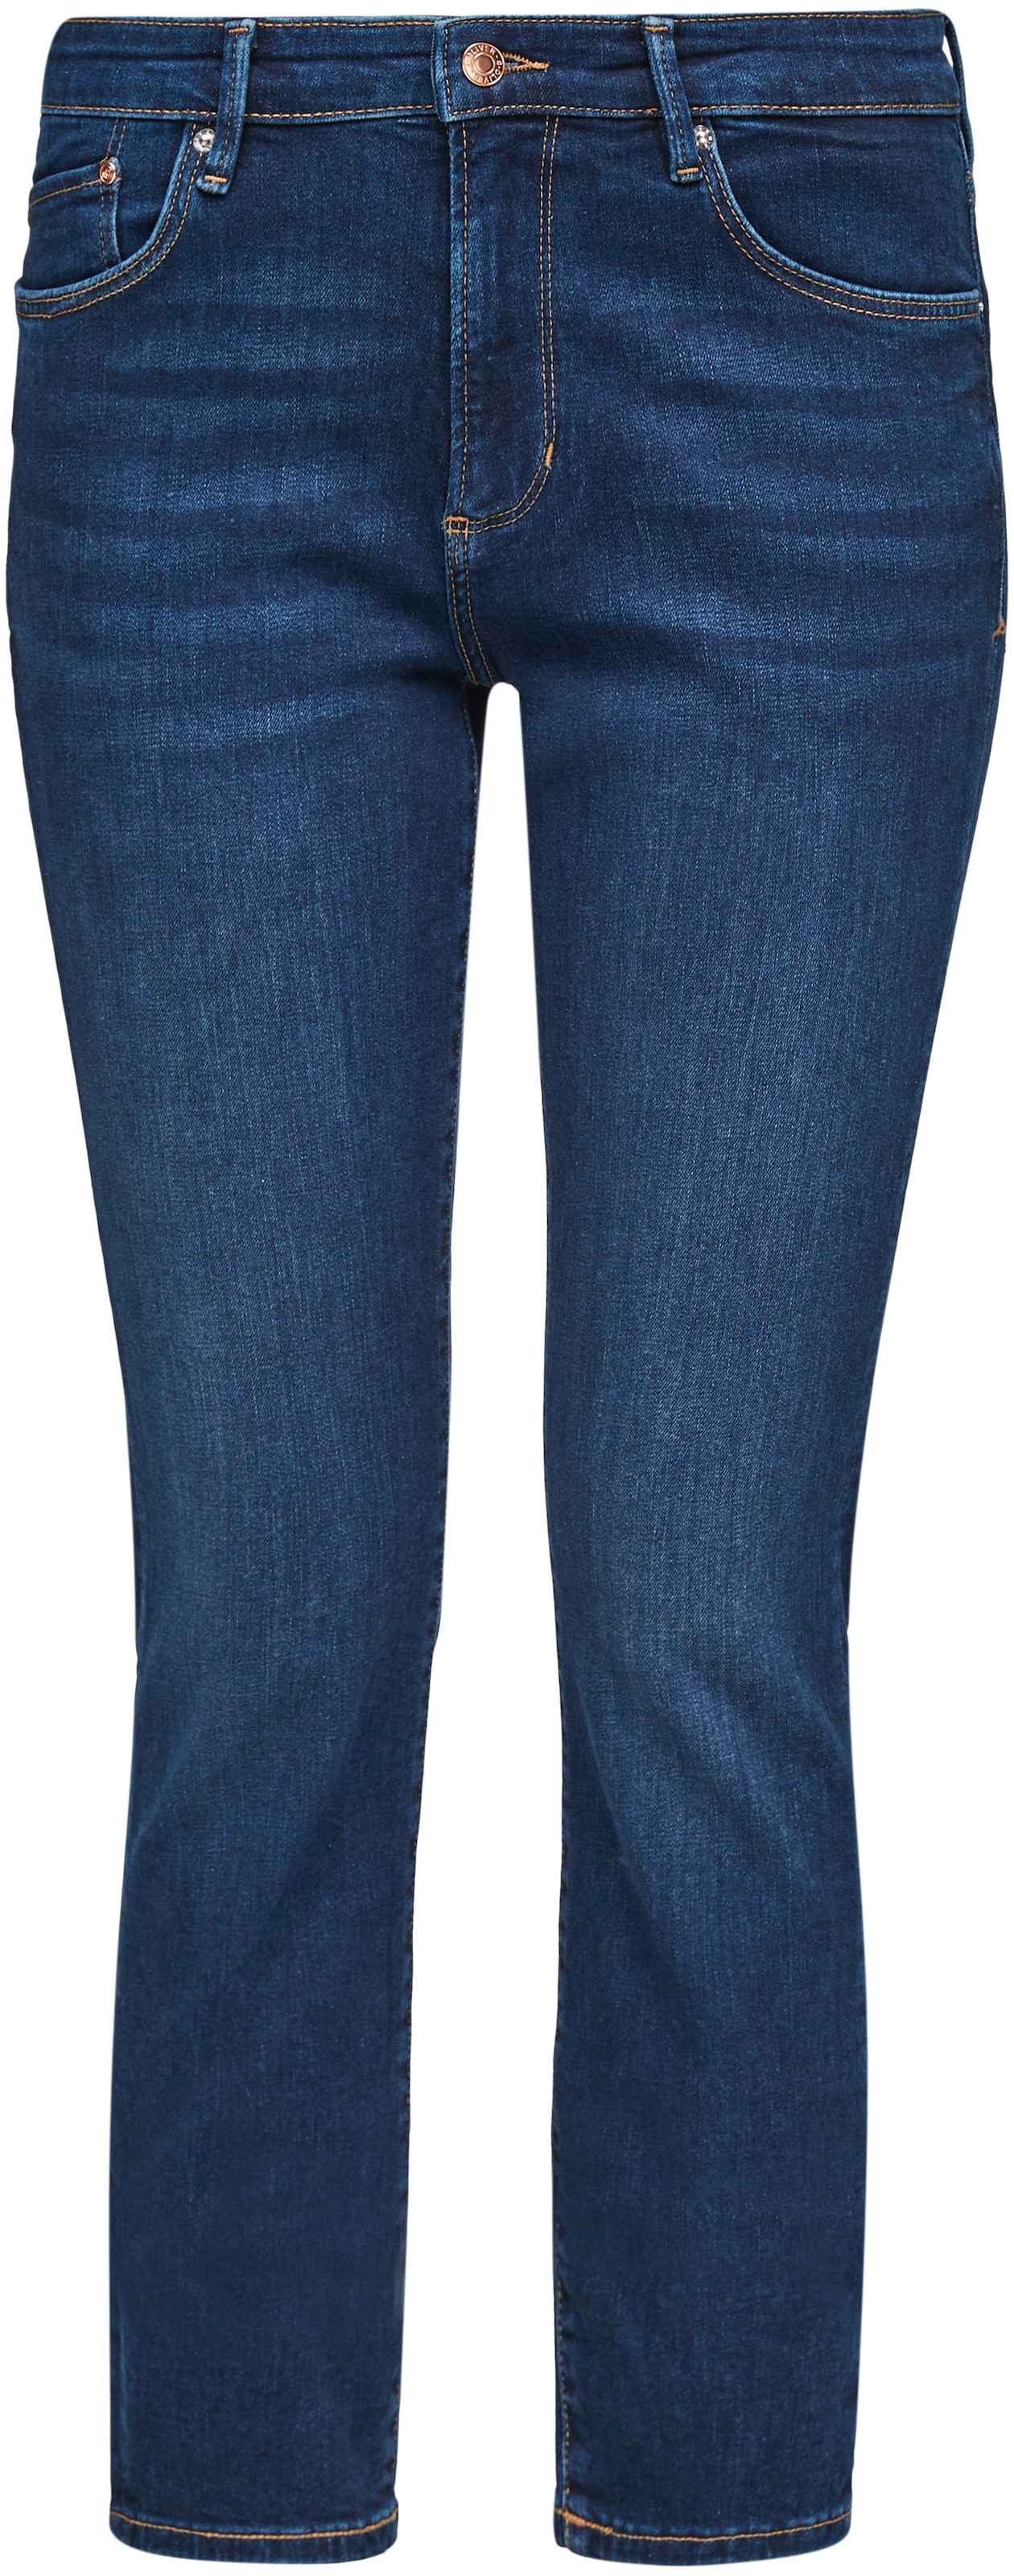 | BAUR Form Basic »Betsy«, in kaufen Slim-fit-Jeans 5-Pocket für s.Oliver